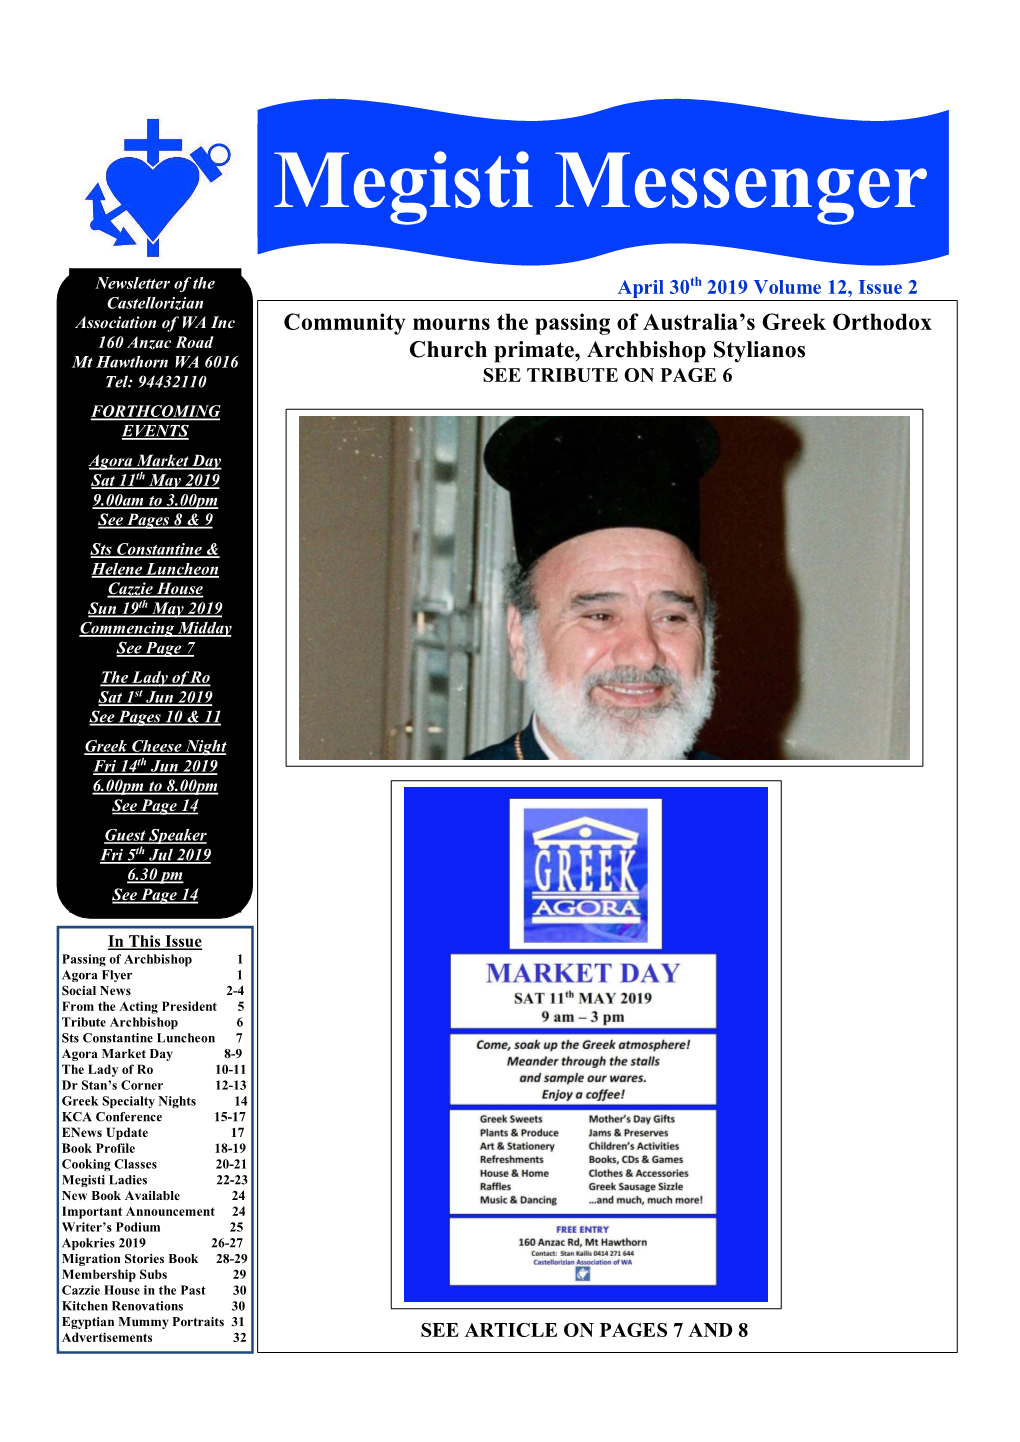 Megisti Messenger Issue 1/2008